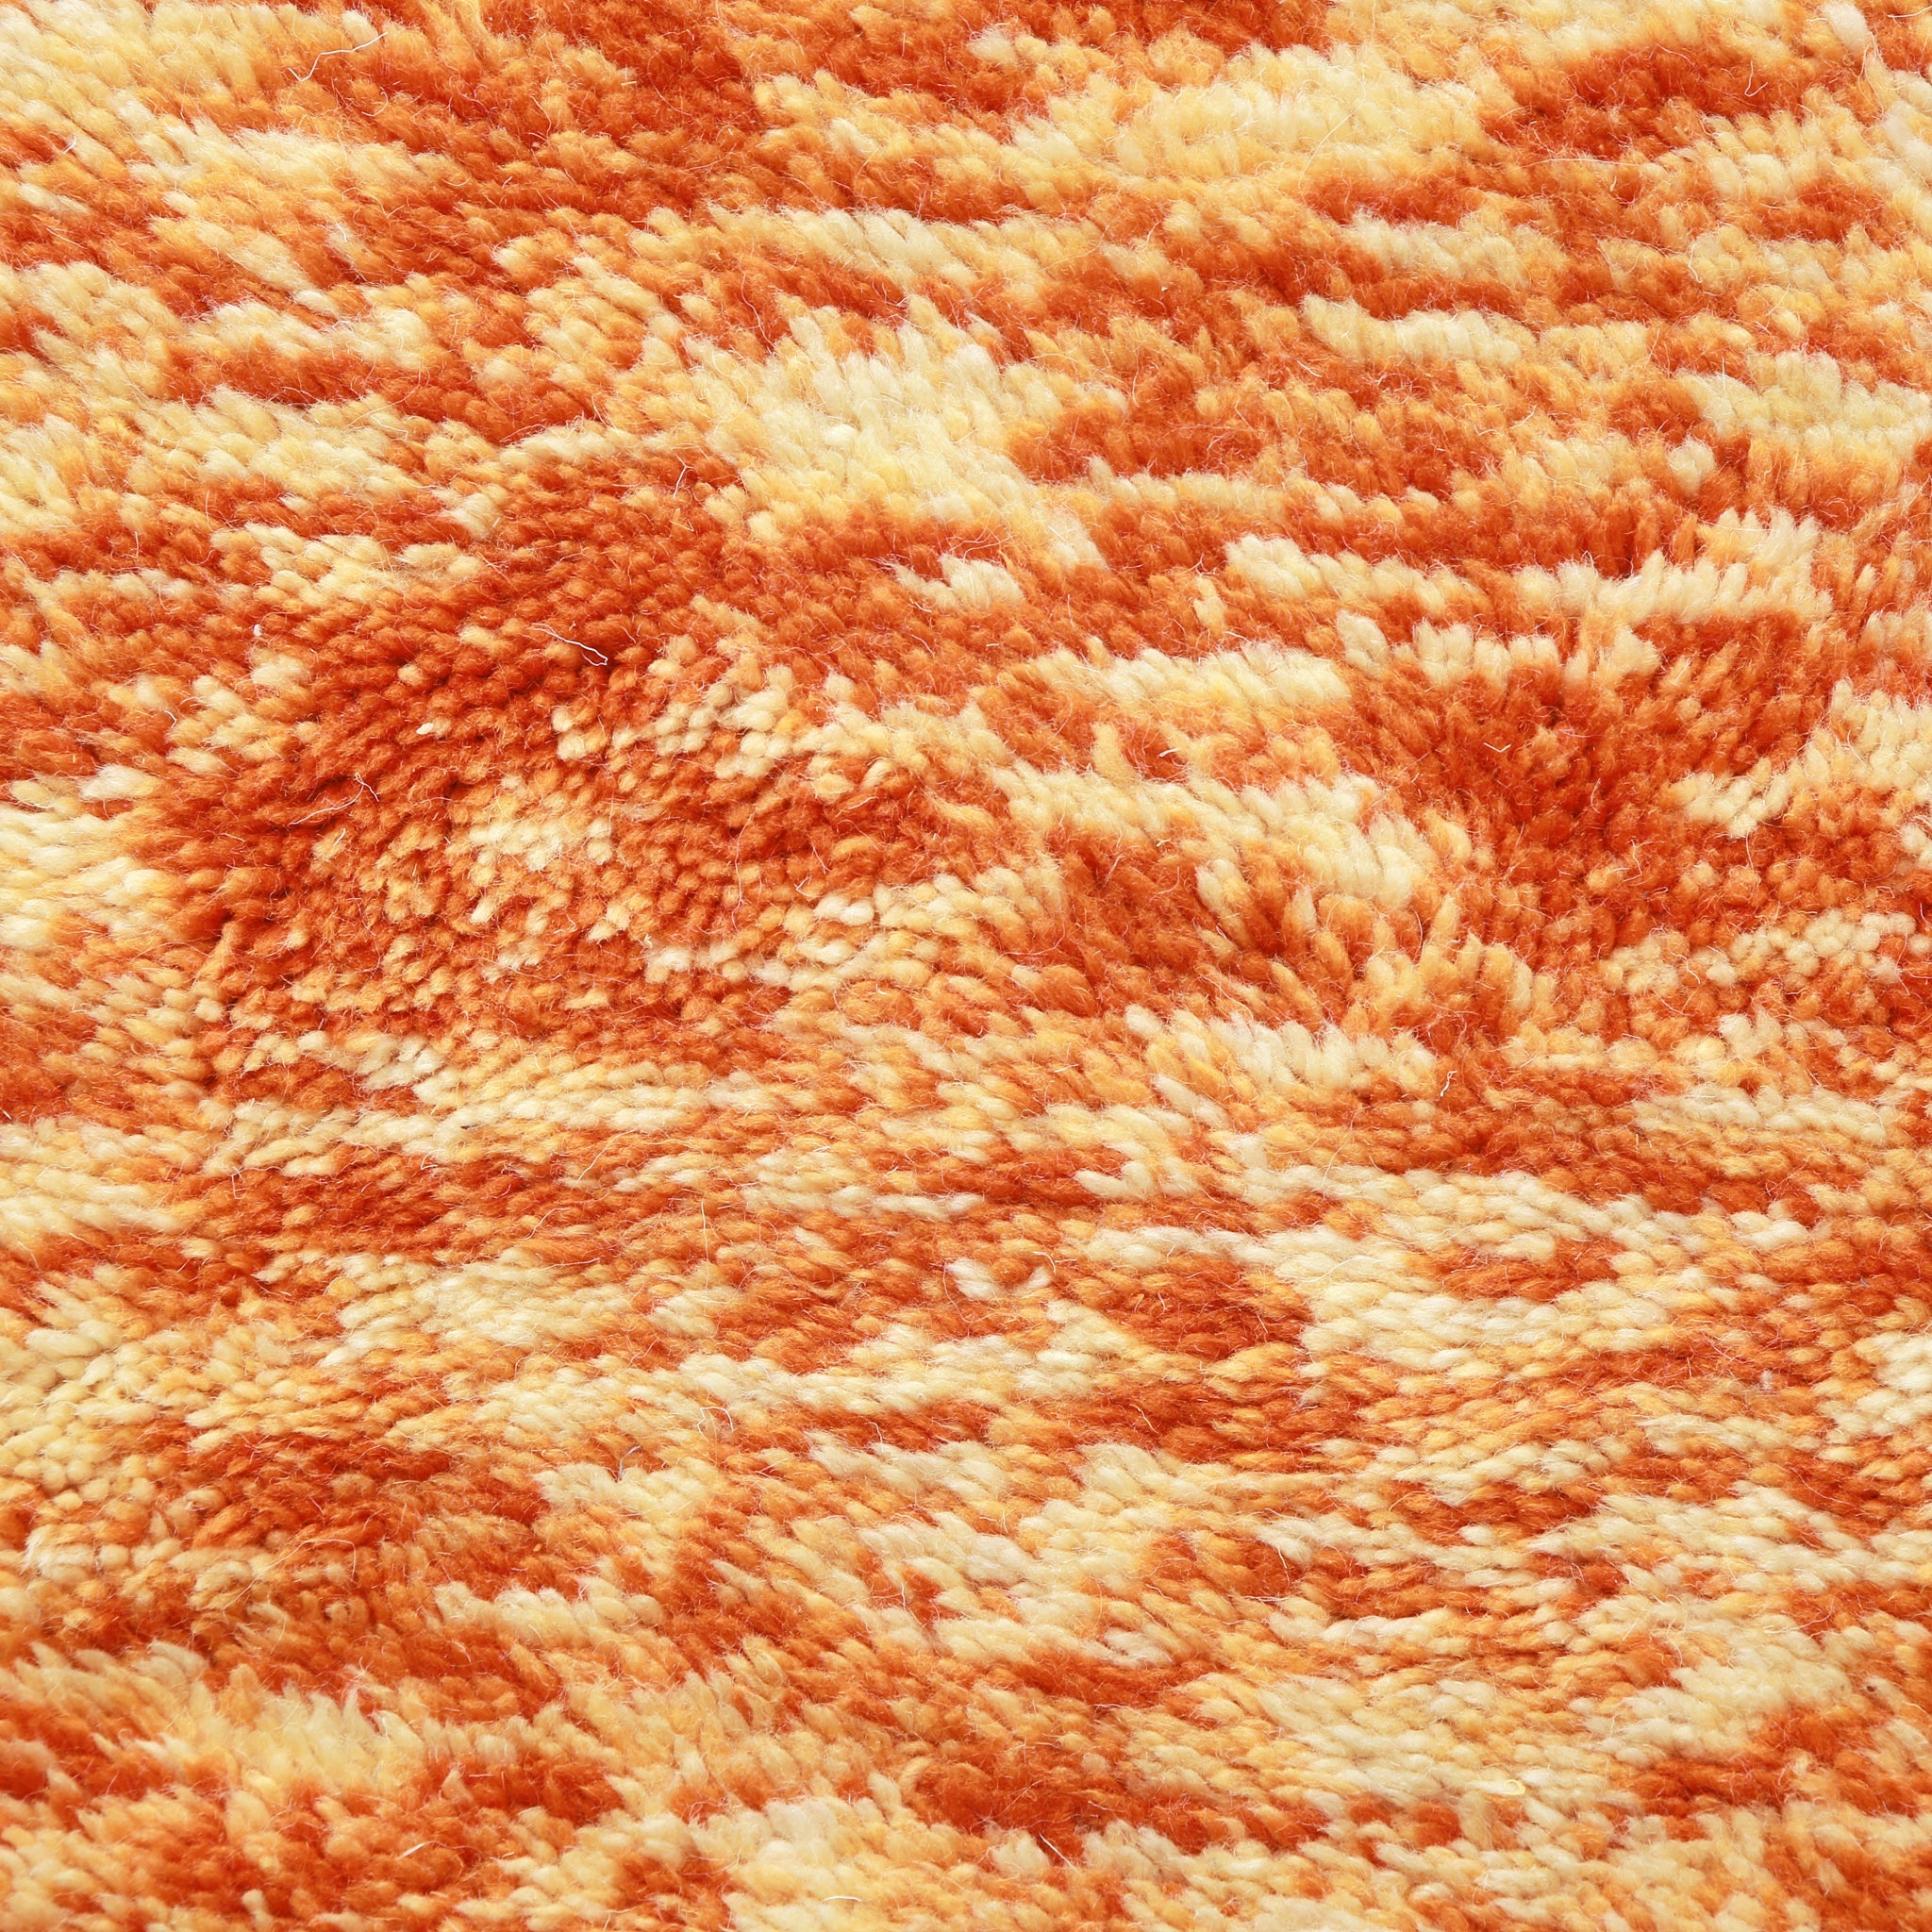 primo piano del dei peli di lana con varie sfumature di arancione